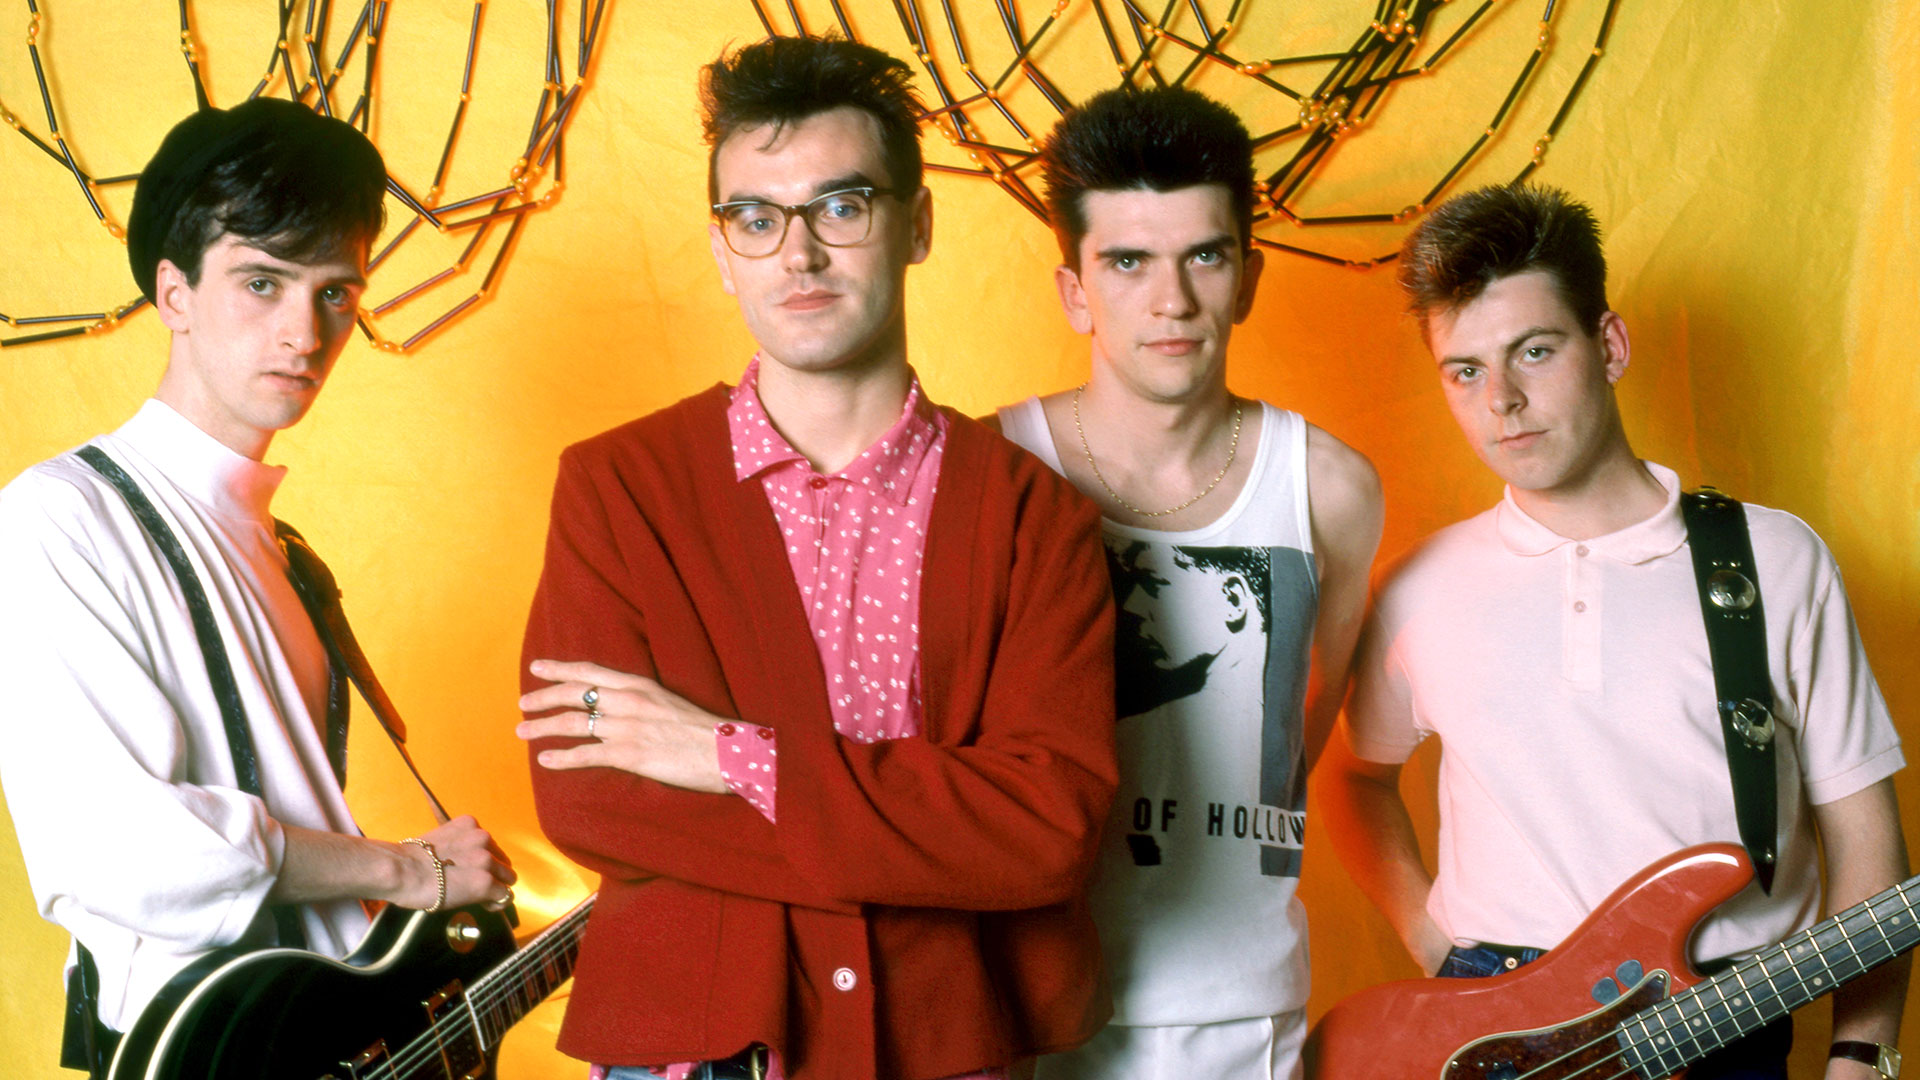 La banda The Smiths era integrada por Johnny Marr, Morrissey, Mike Joyce y Andy Rourke. Esta foto fue sacada después de un show en Detroit en 1985 (Crédito: Ross Marino/Getty Images)